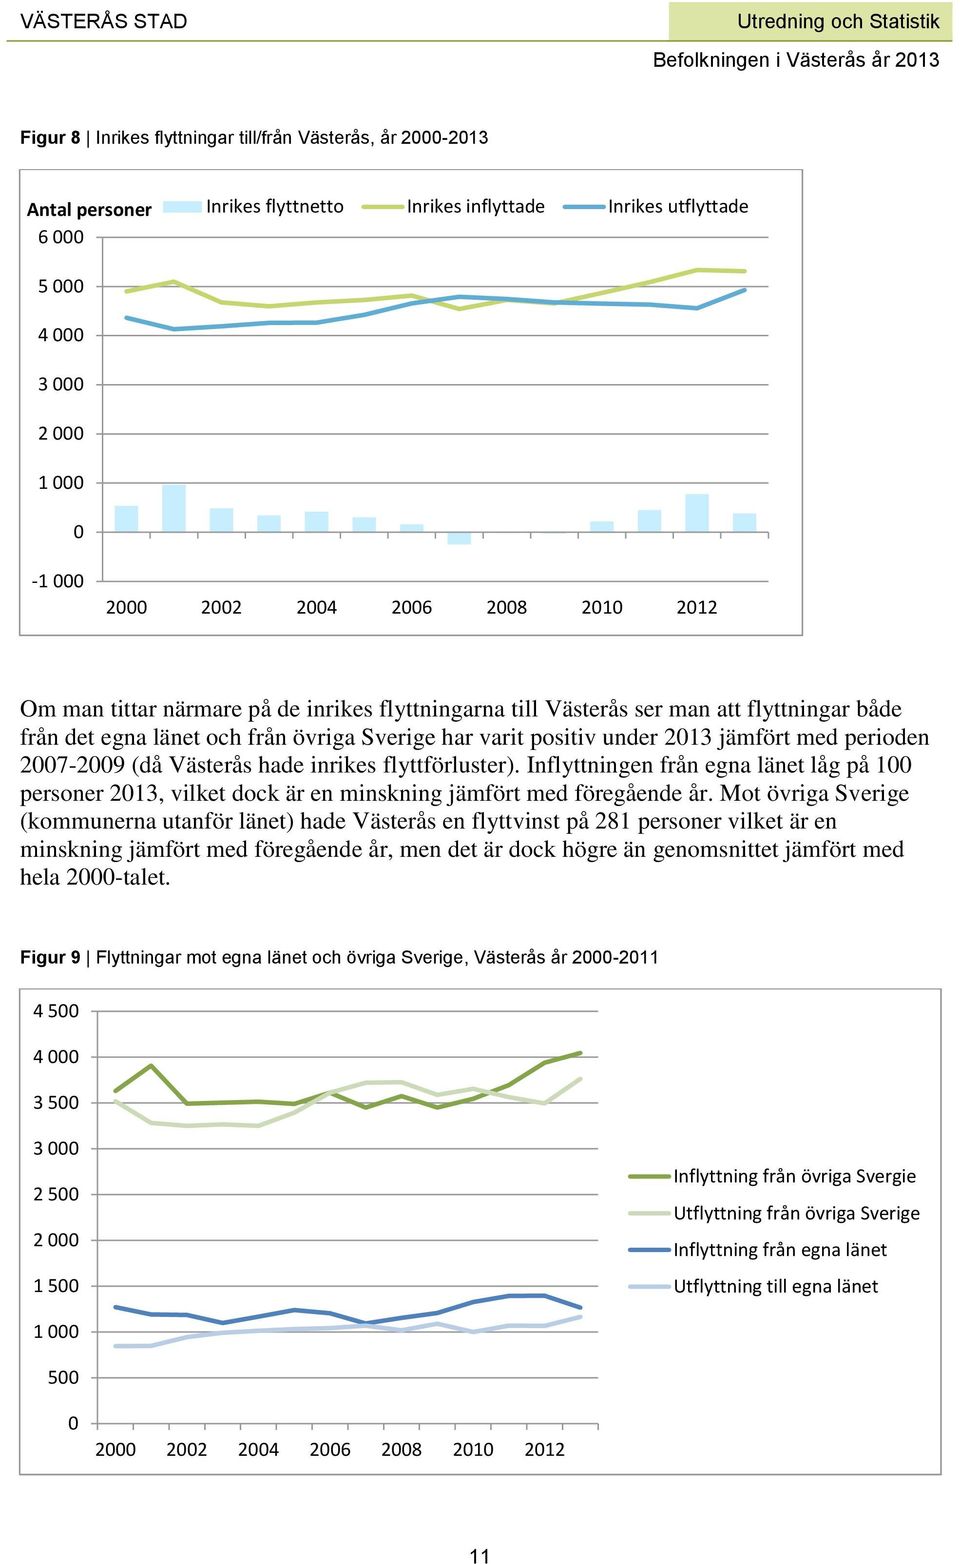 perioden 2007-2009 (då Västerås hade inrikes flyttförluster). Inflyttningen från egna länet låg på 100 personer 2013, vilket dock är en minskning jämfört med föregående år.